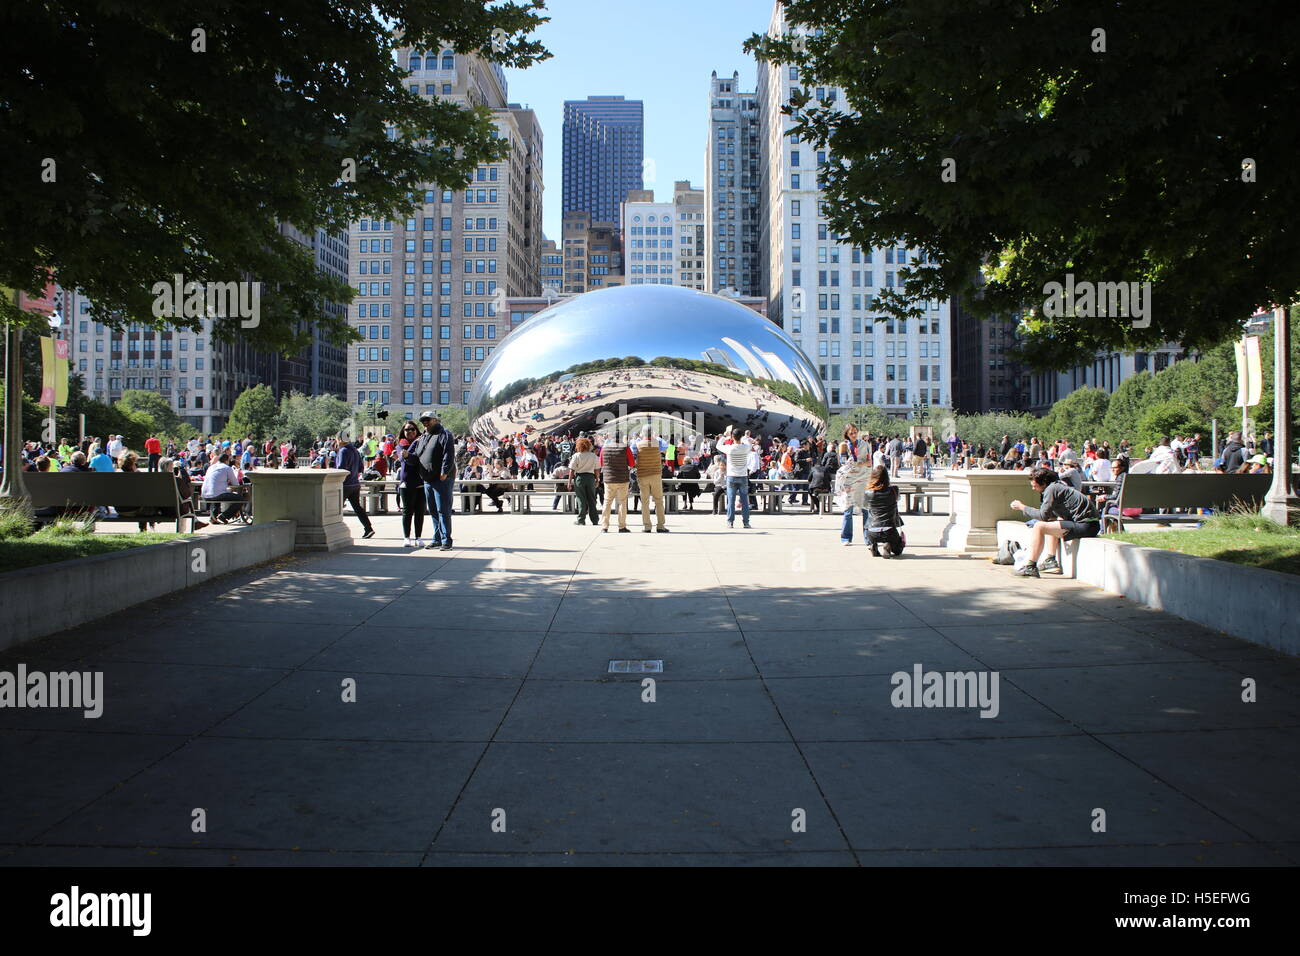 Riesen Bohnen. Cloud Gate. Millennium Park Chicago. Hochzeitsbild. Stockfoto